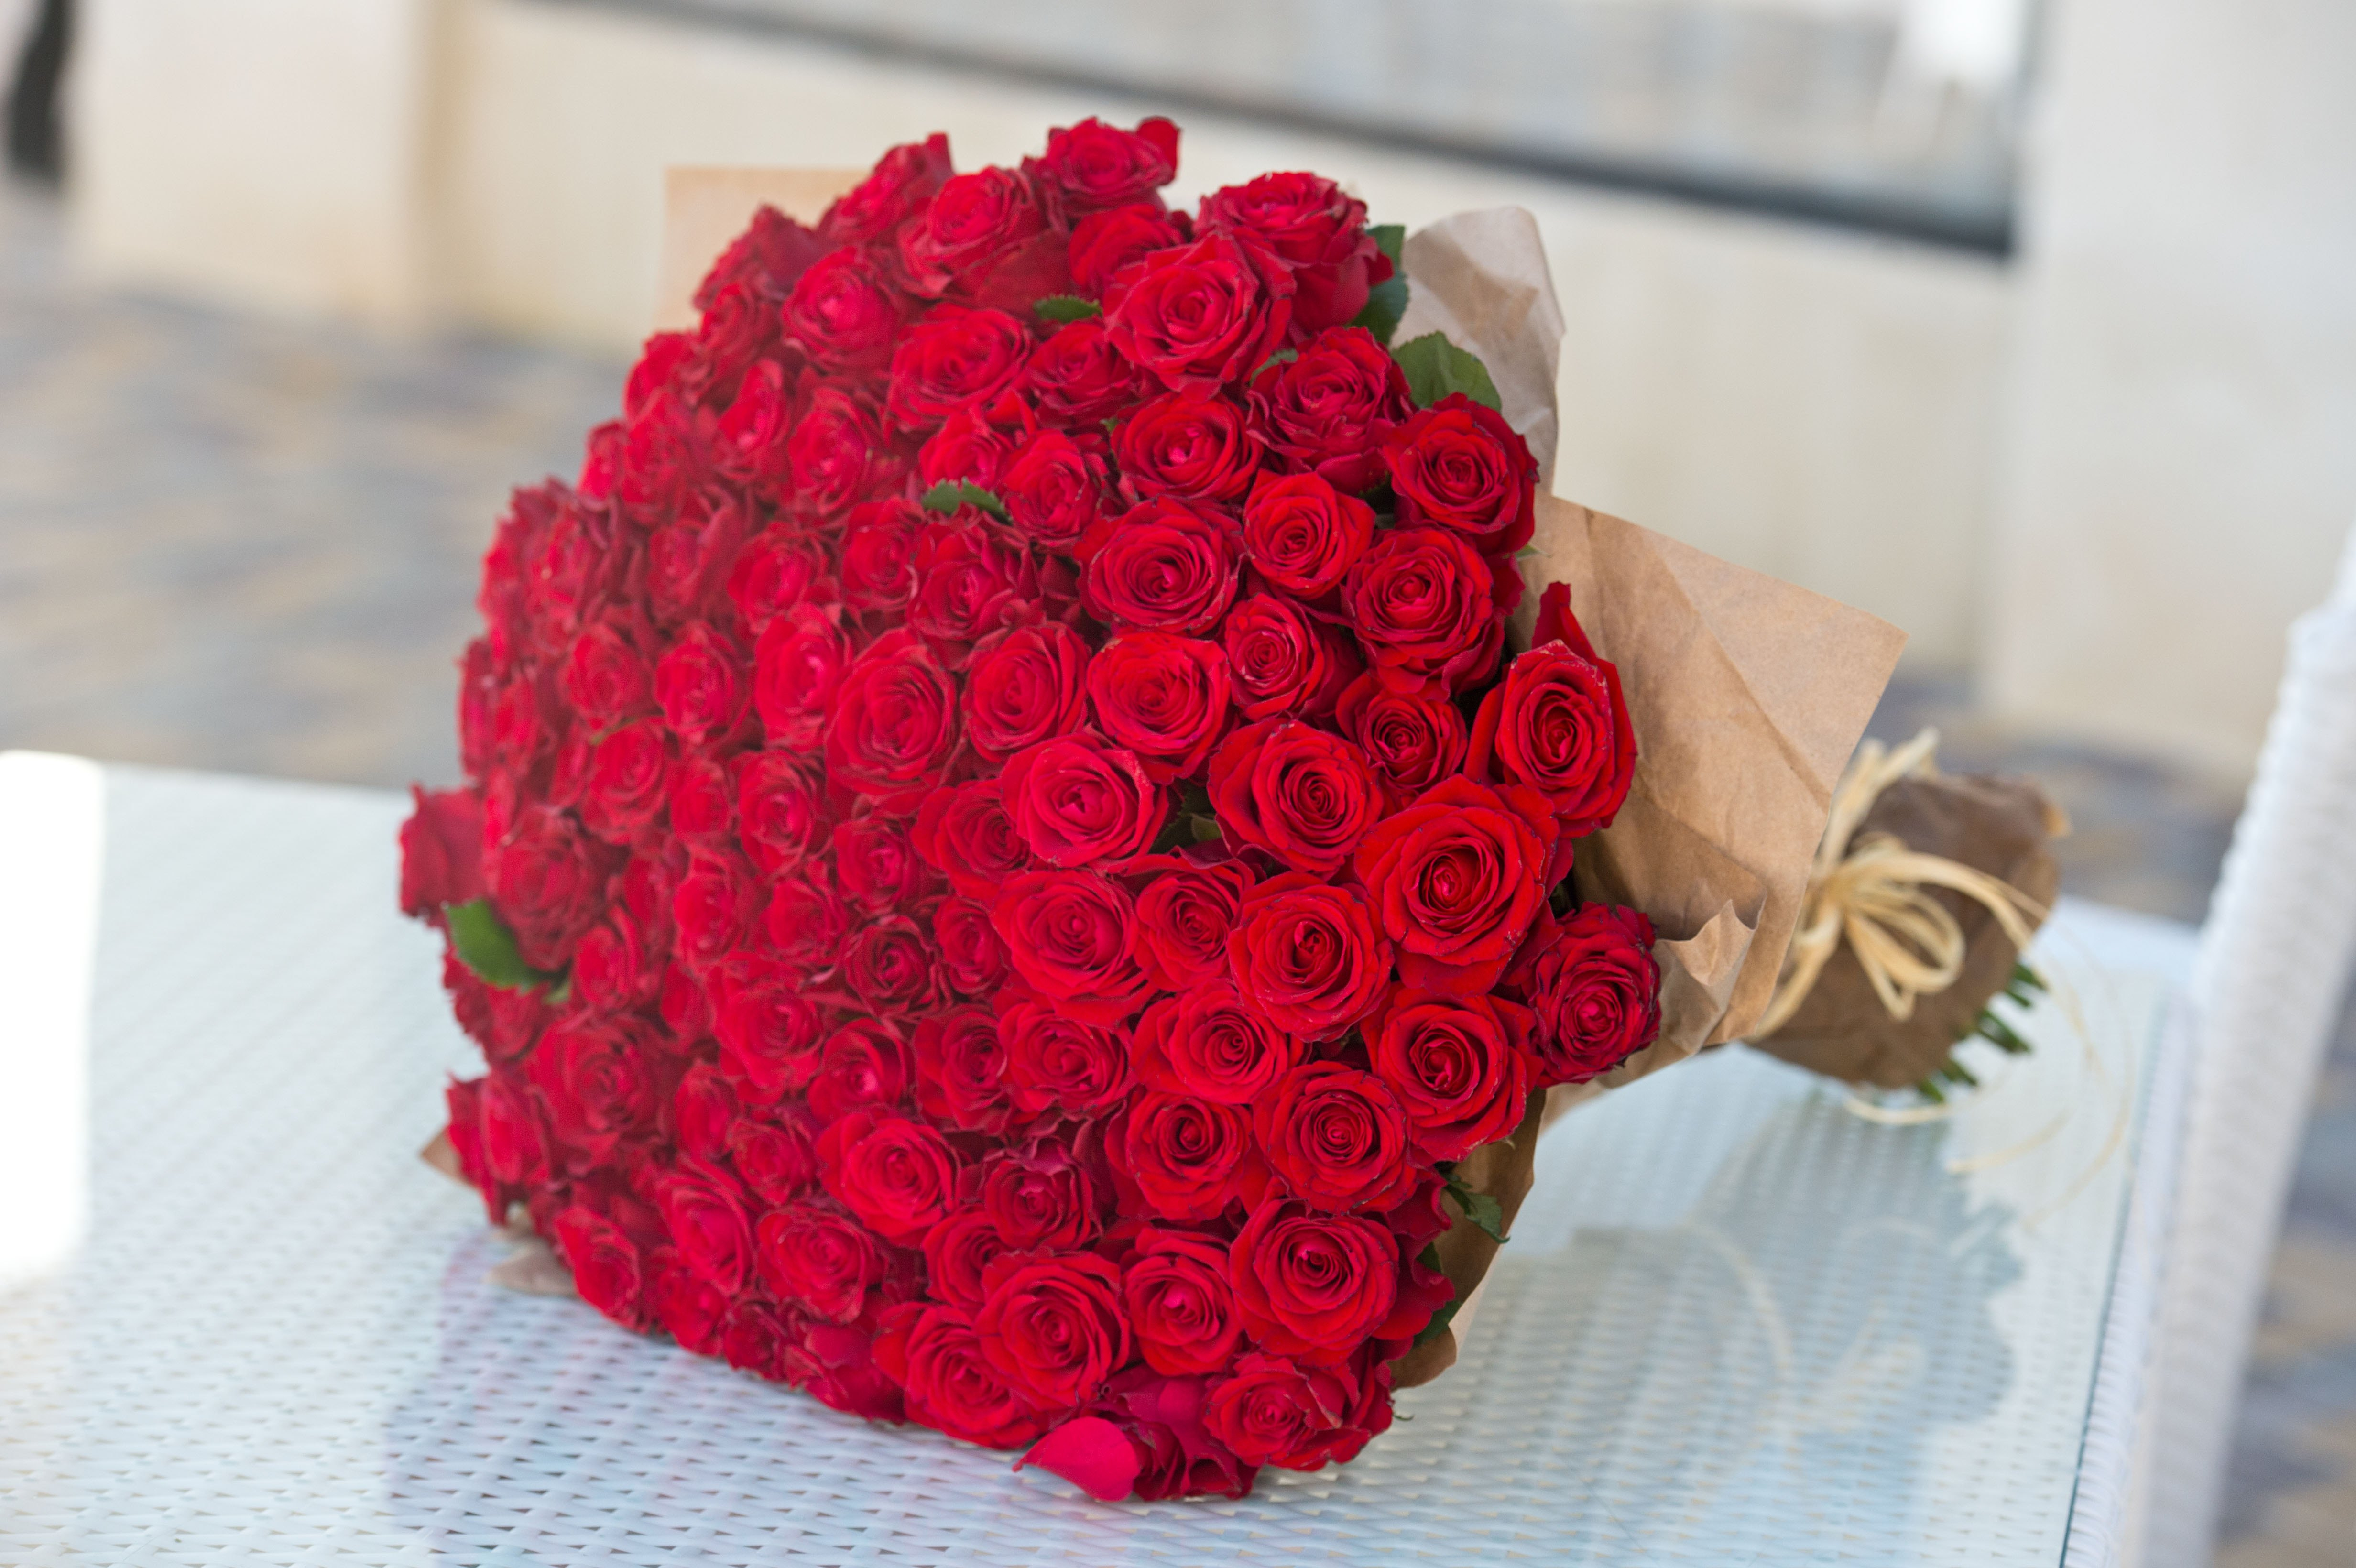 Gran ramo de 101 rosas rojas. | Fuente: Shutterstock